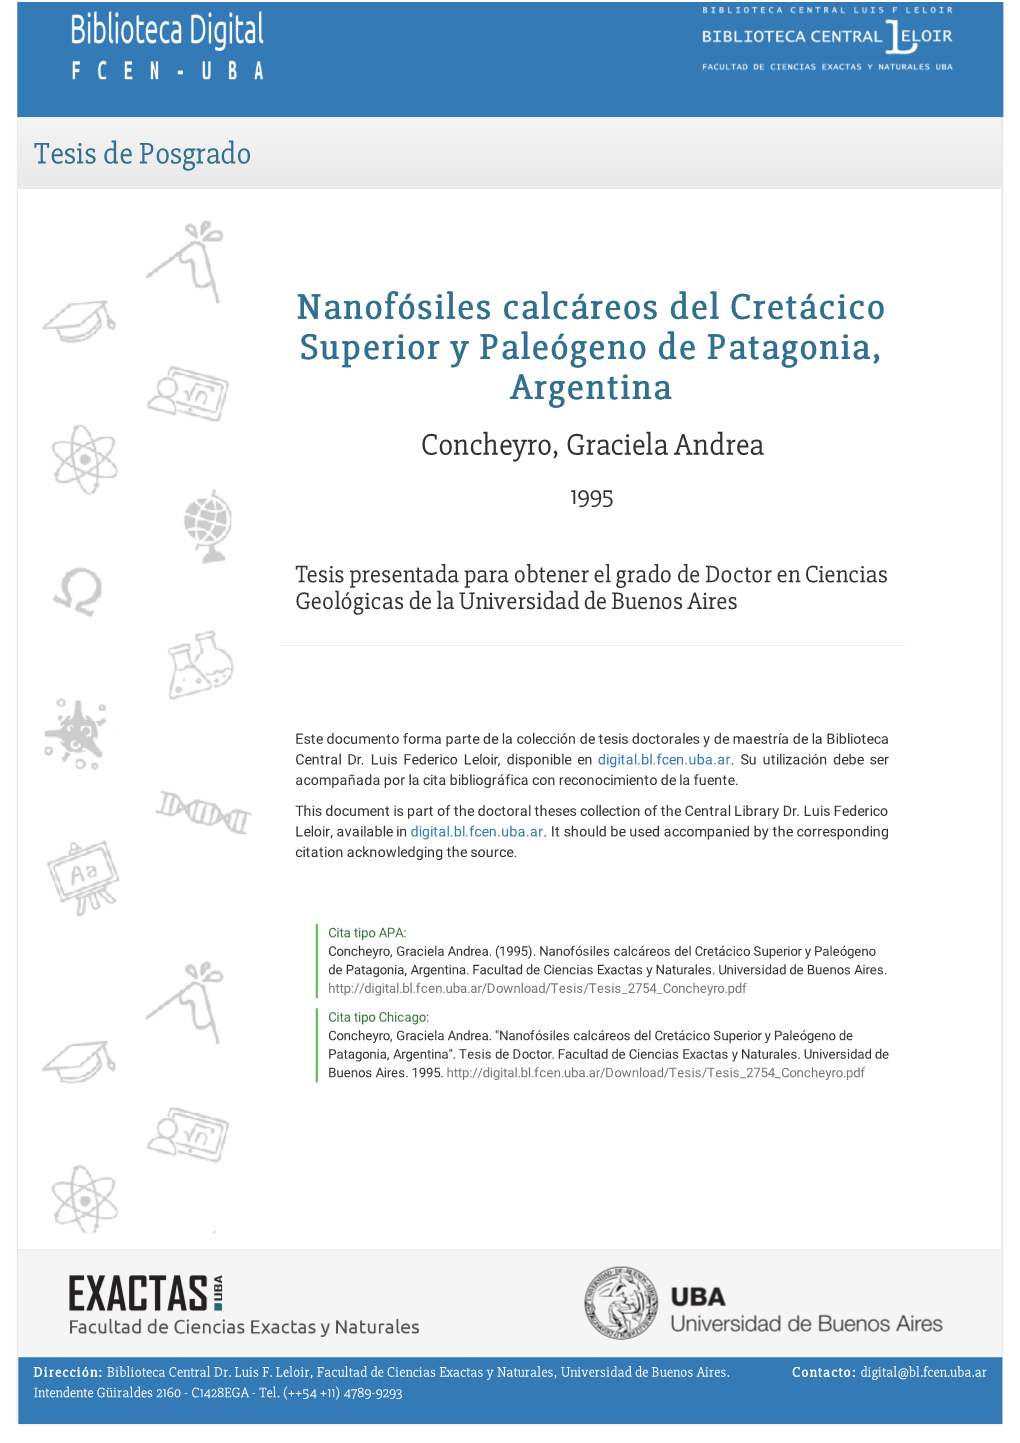 Nanofósiles Calcáreos Del Cretácico Superior Y Paleógeno De Patagonia, Argentina Concheyro, Graciela Andrea 1995